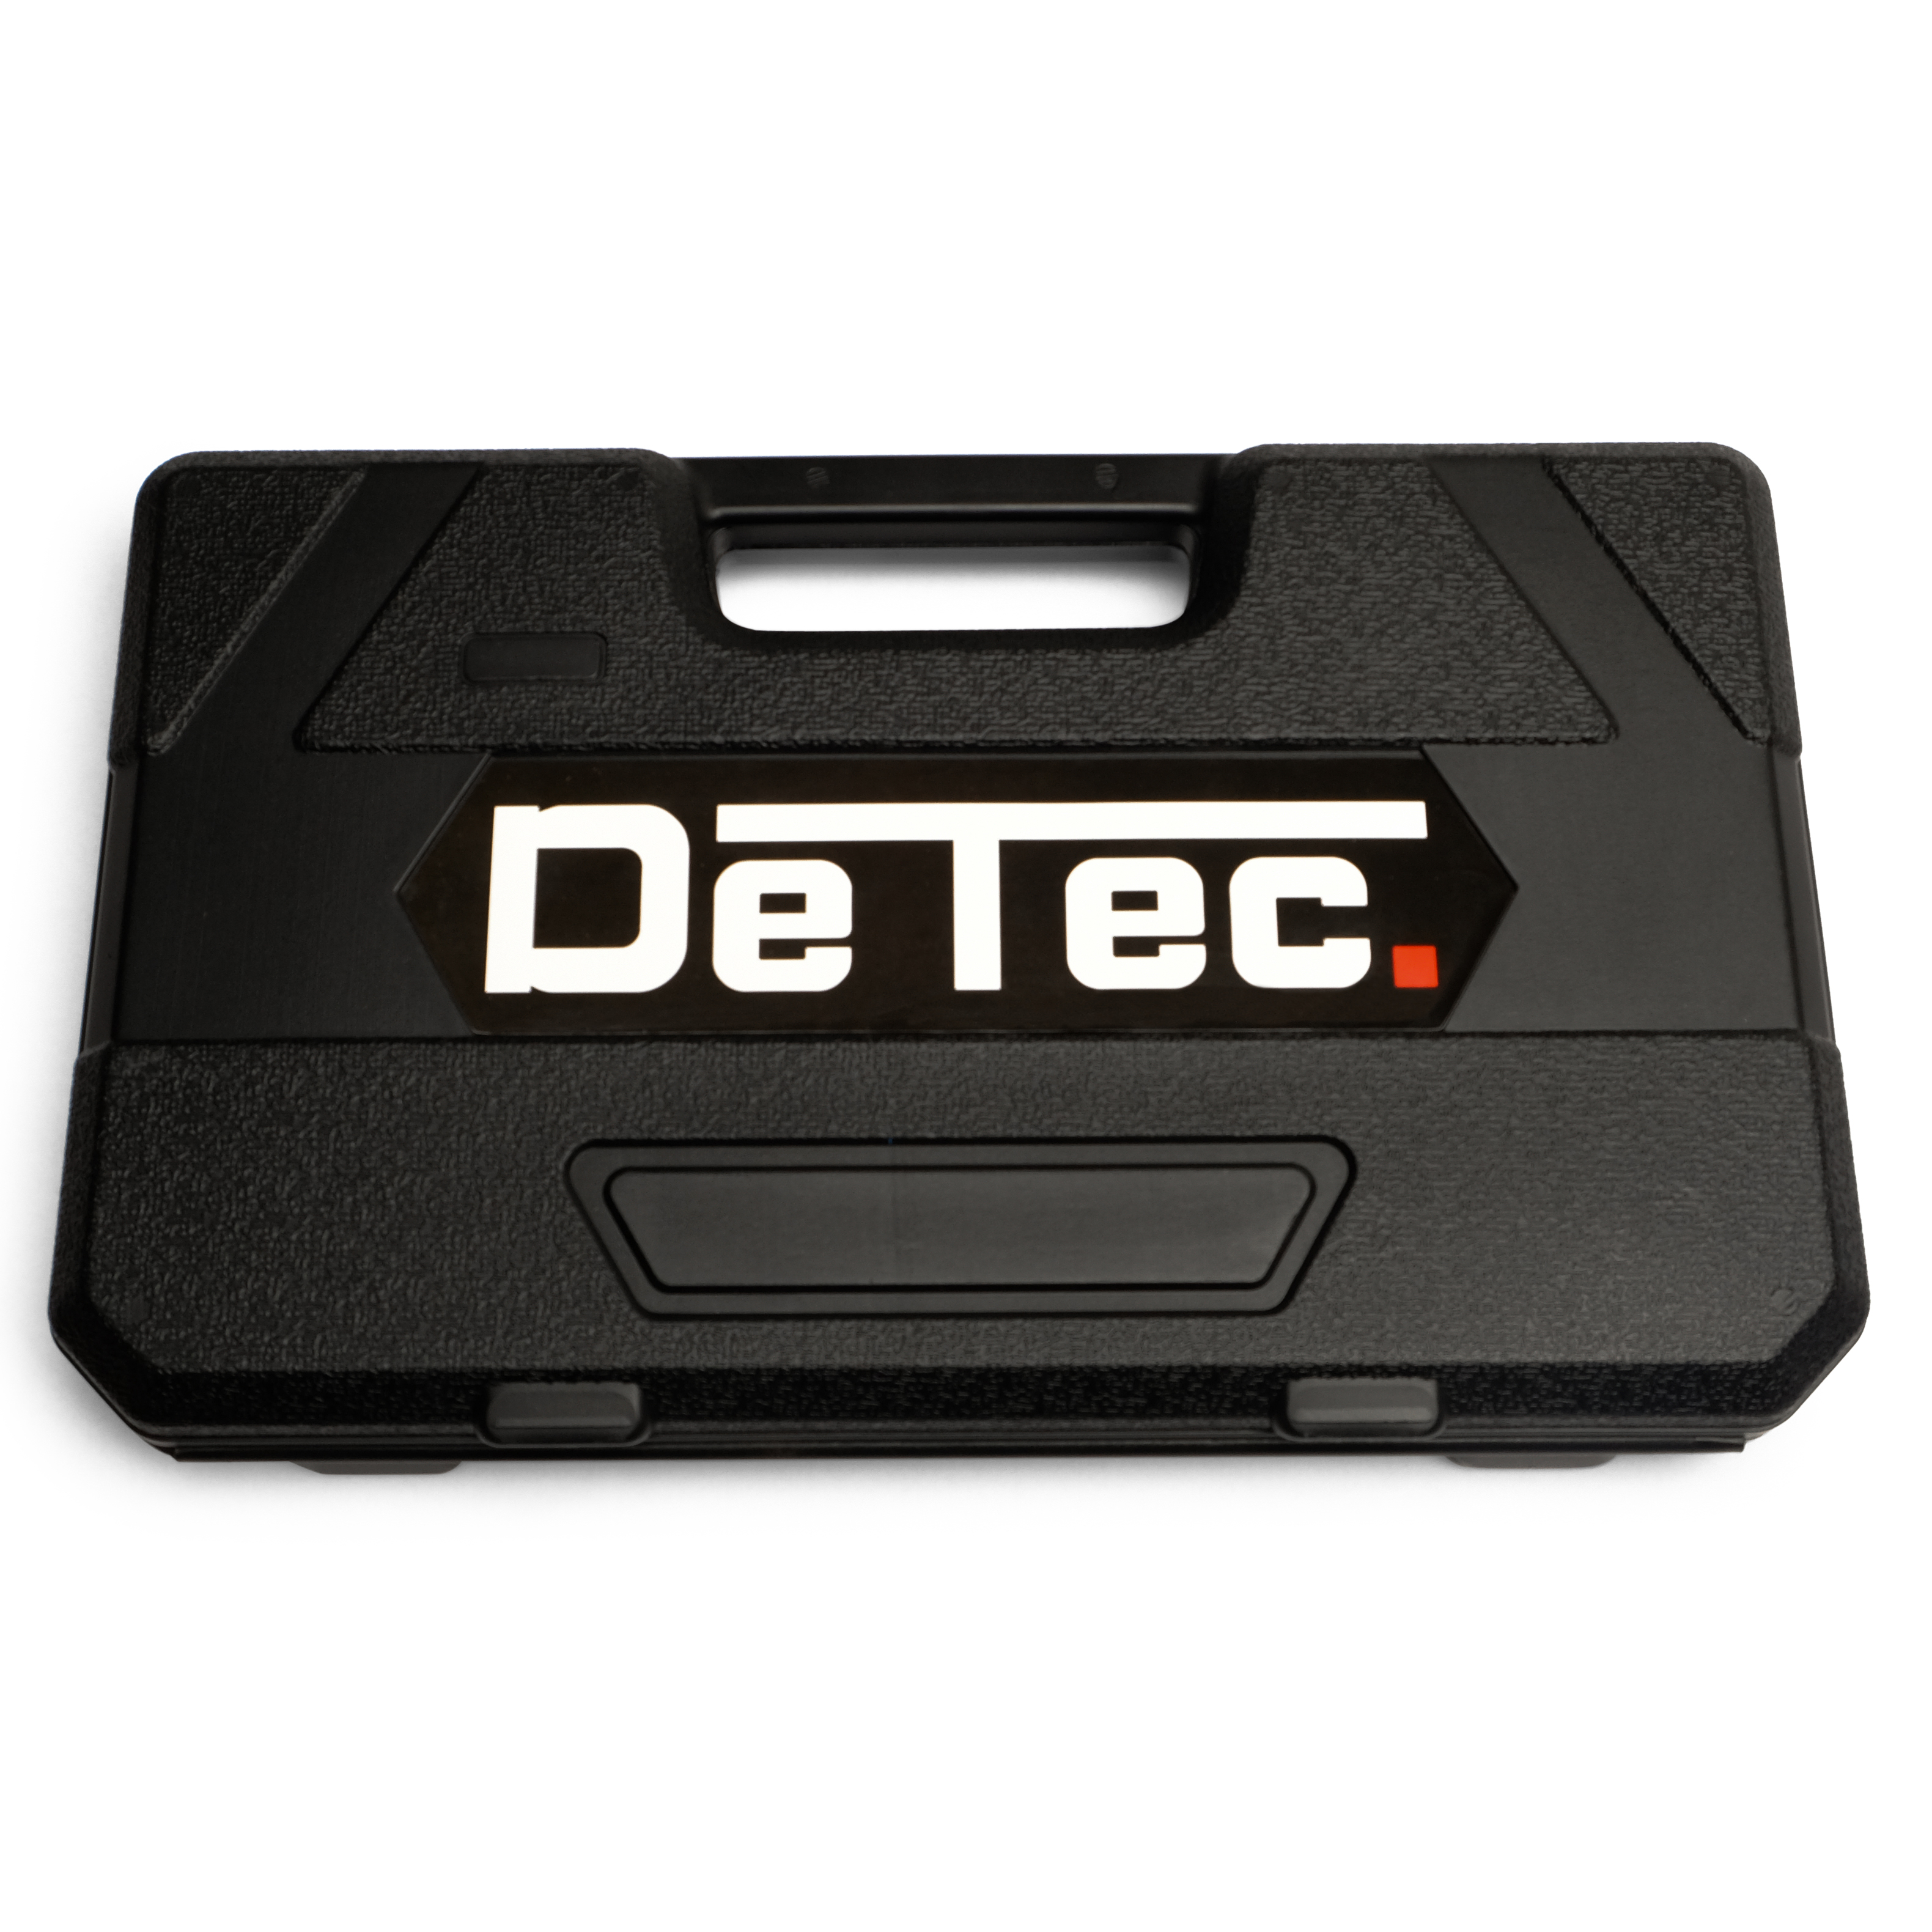 DeTec. Werkzeugkiste 2044 | 4 Schubladen | 175-teilig Inkl. 3 Tlg. Teleskopratschenset Kombiset